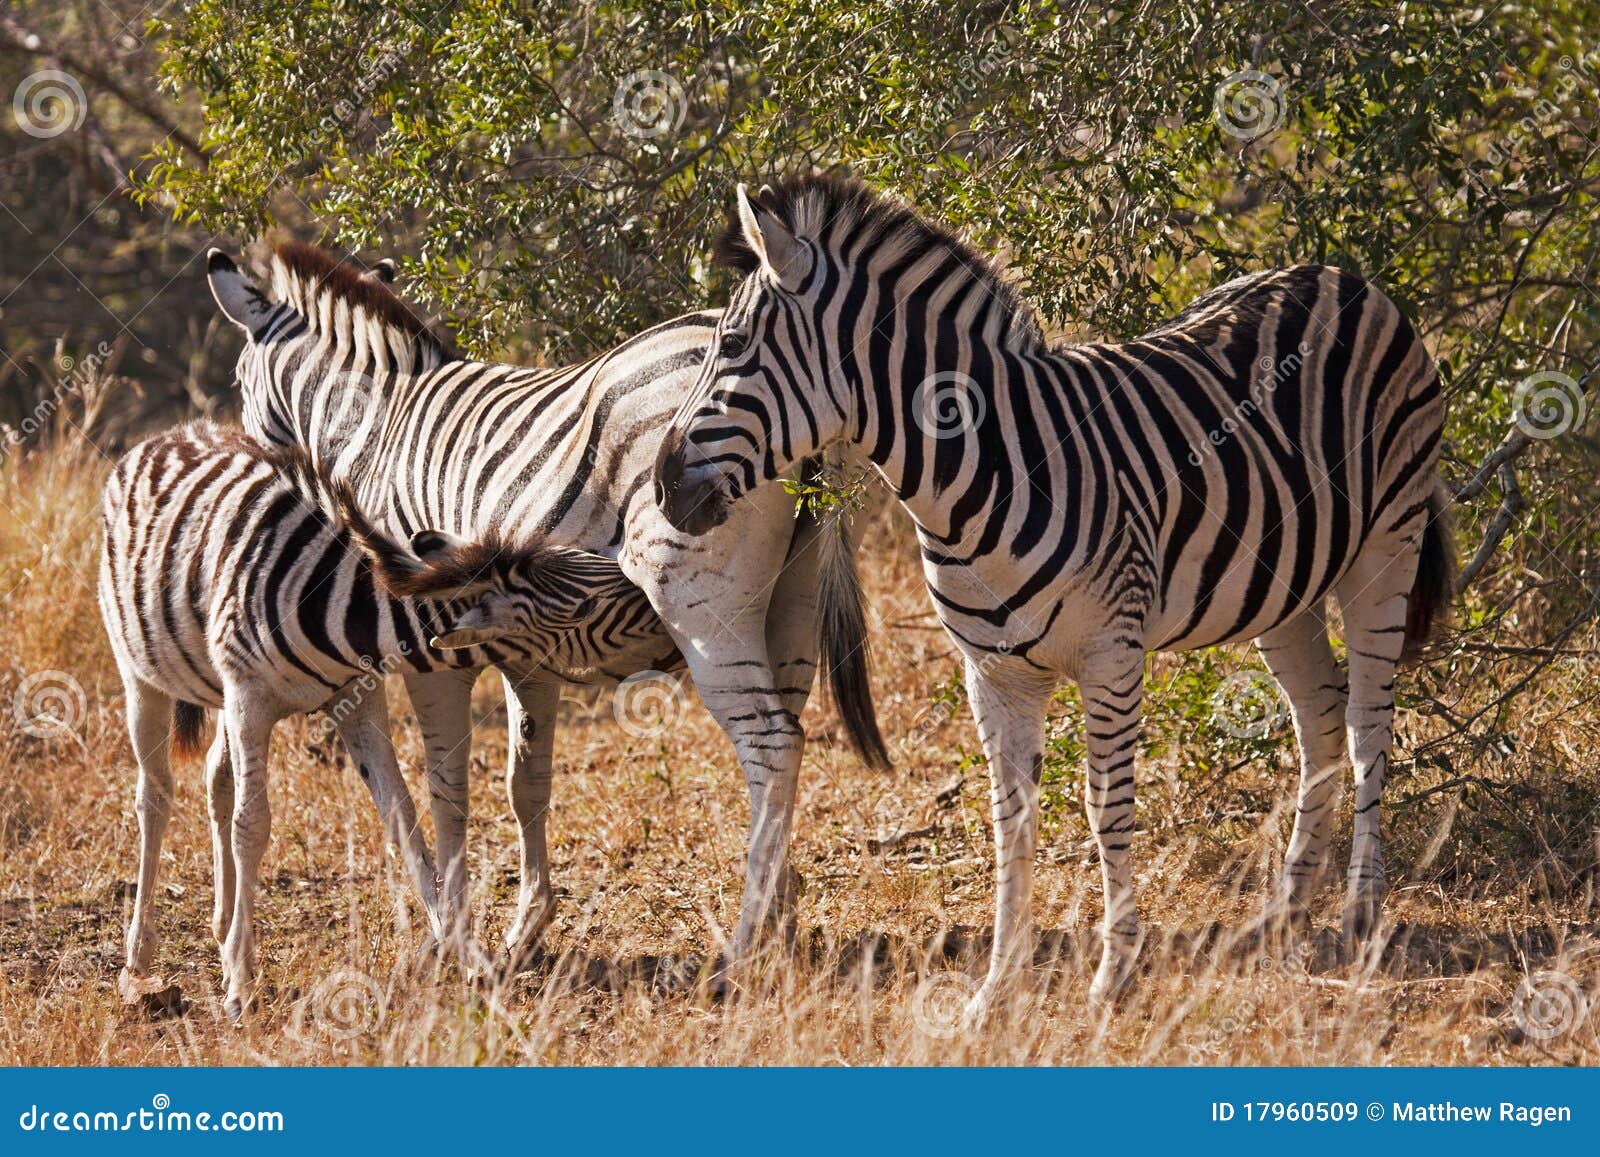 baby zebra nursing